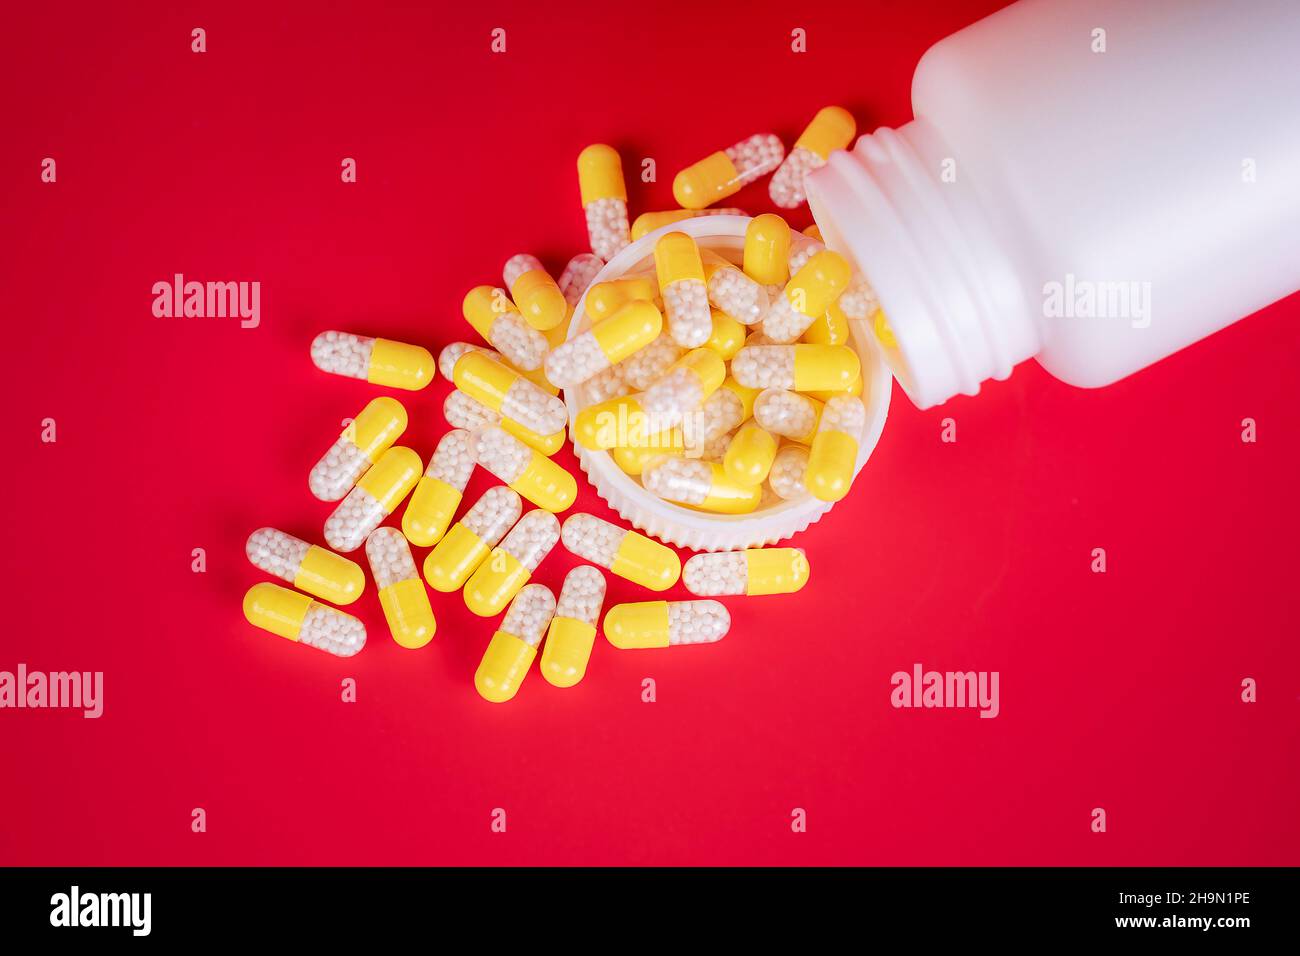 Concepto de medicina. Cápsulas amarillas dispersas de la botella de la prescripción. El fondo es de color rojo, con espacio para escribir. Foto de estudio. Foto de stock